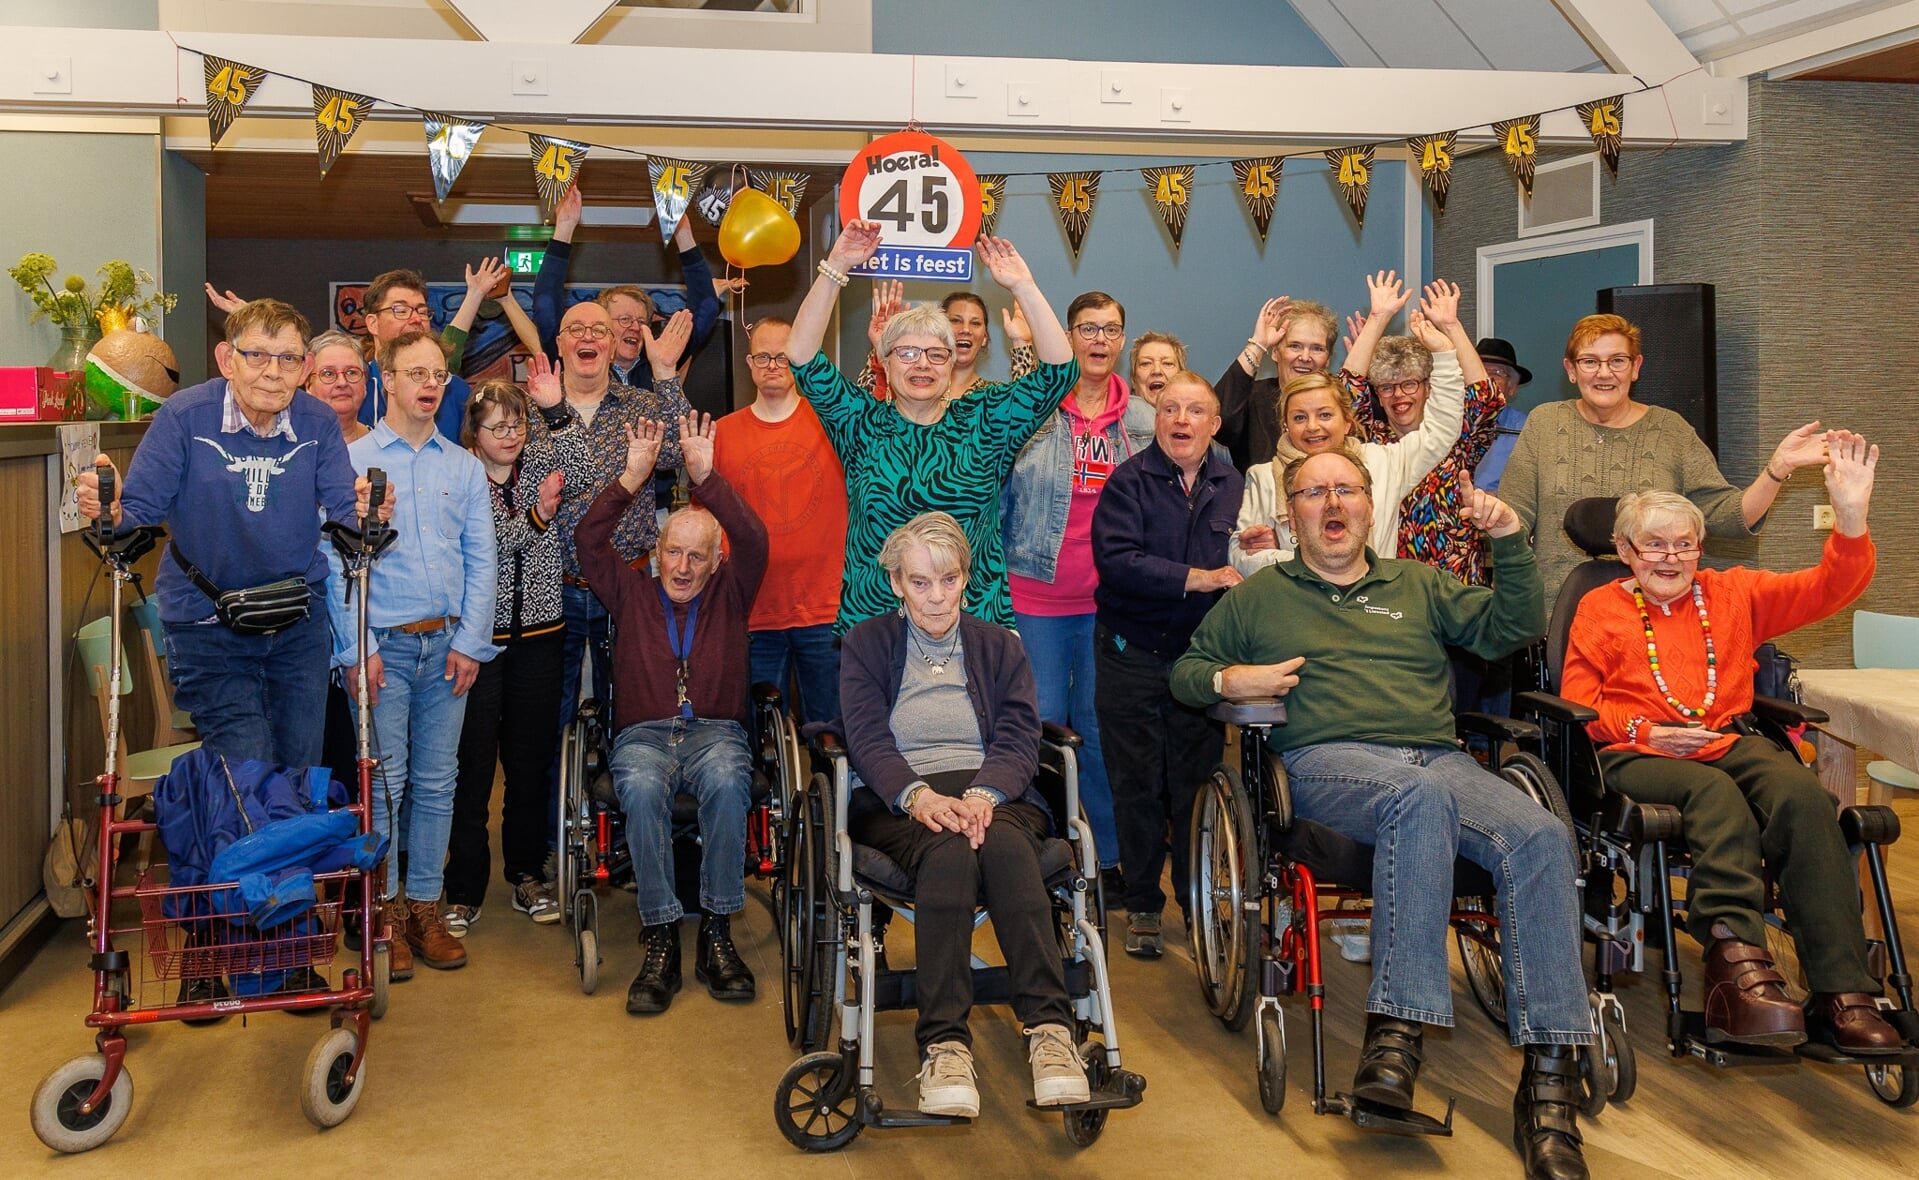 Vrijetijdsclub De Vrijbuiters, voor mensen met een beperking, vierde onlangs haar 45-jarig bestaan met alle deelnemers en vrijwilligers in thuishonk De Werf aan de Nieuwe Nieuwstraat.